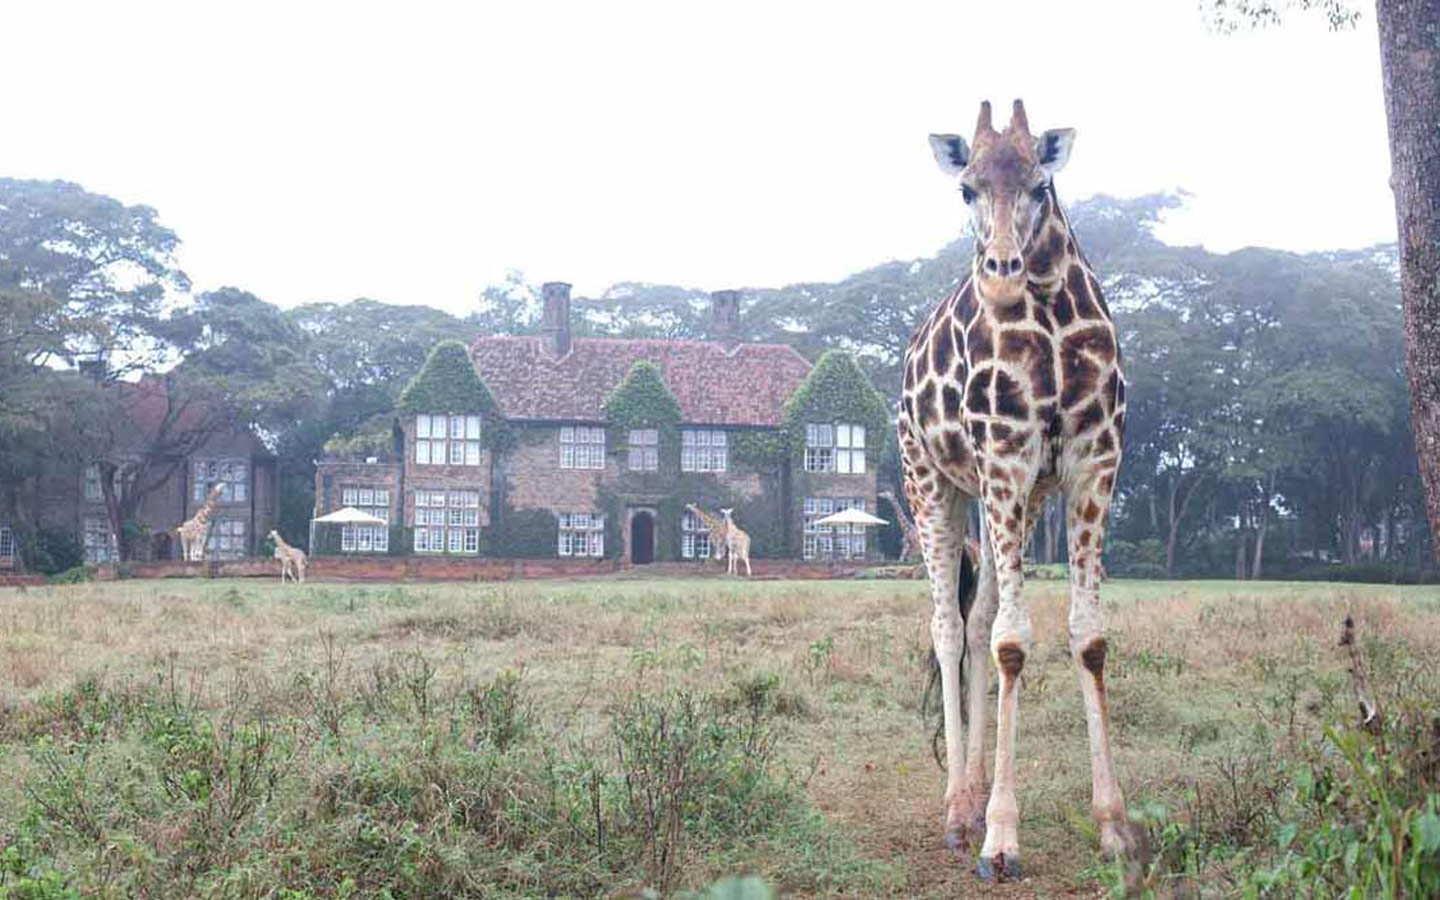 Giraffe Manor Hotel Boutique – Se hospedando com girafas!